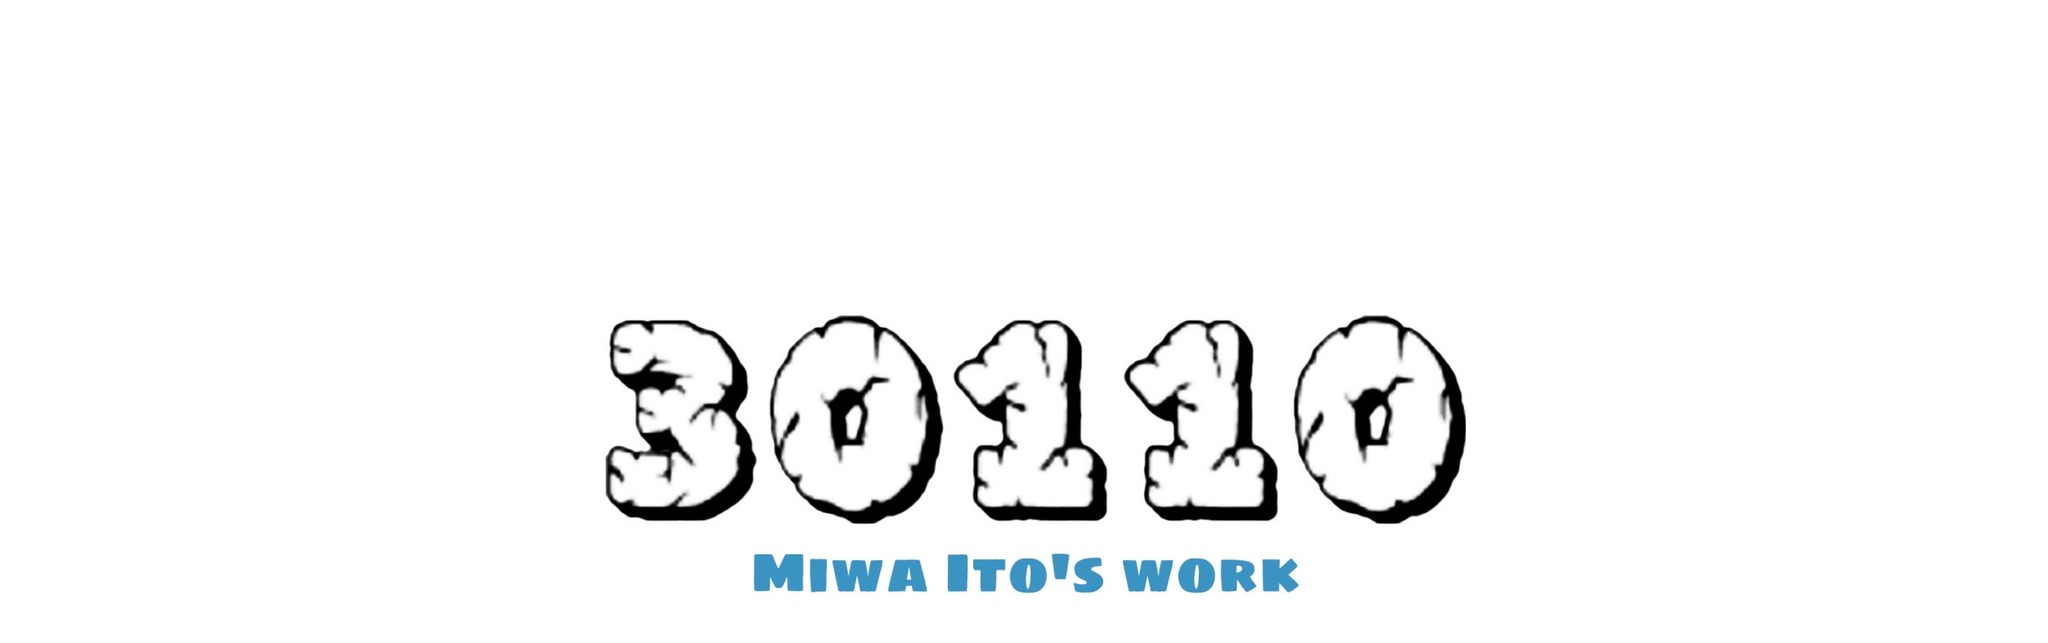 30110 MIWA ITO'S WORK